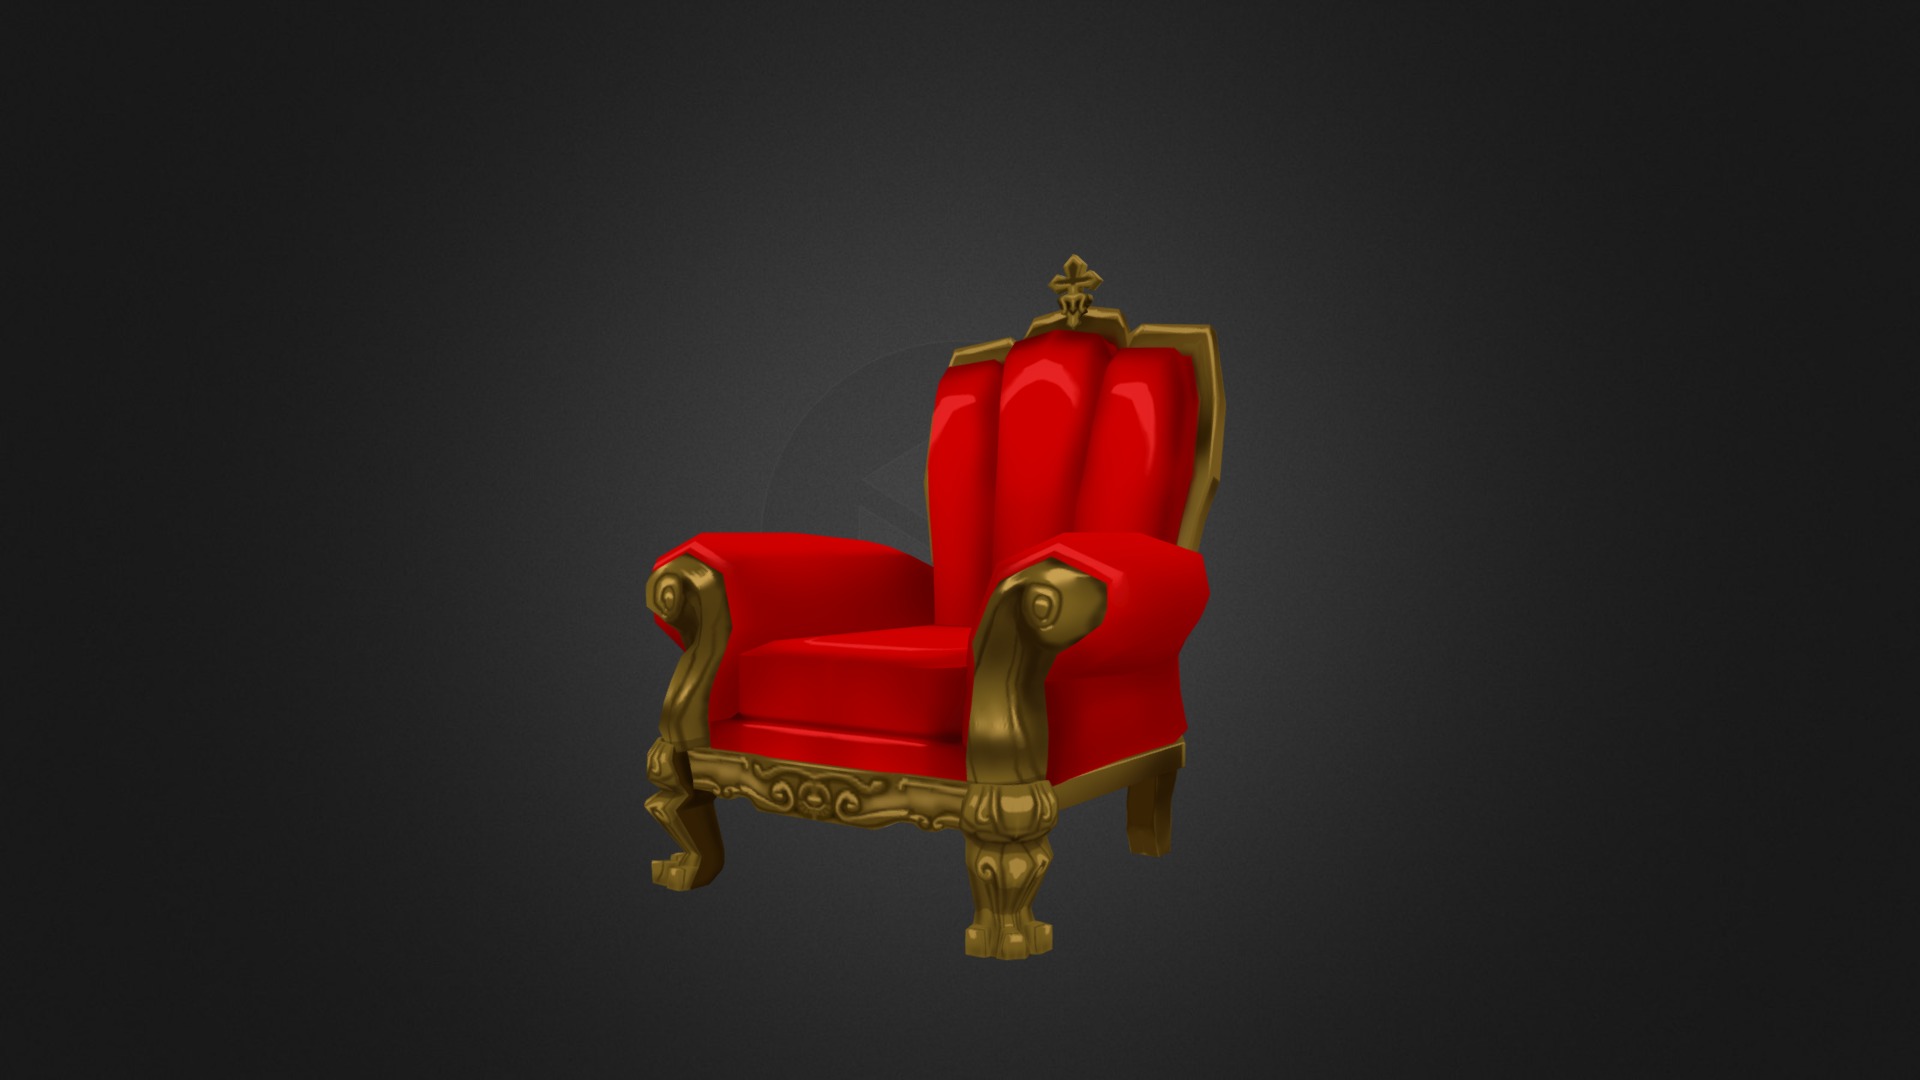 King's Chair - 3D model by negroni_modeler 3d model